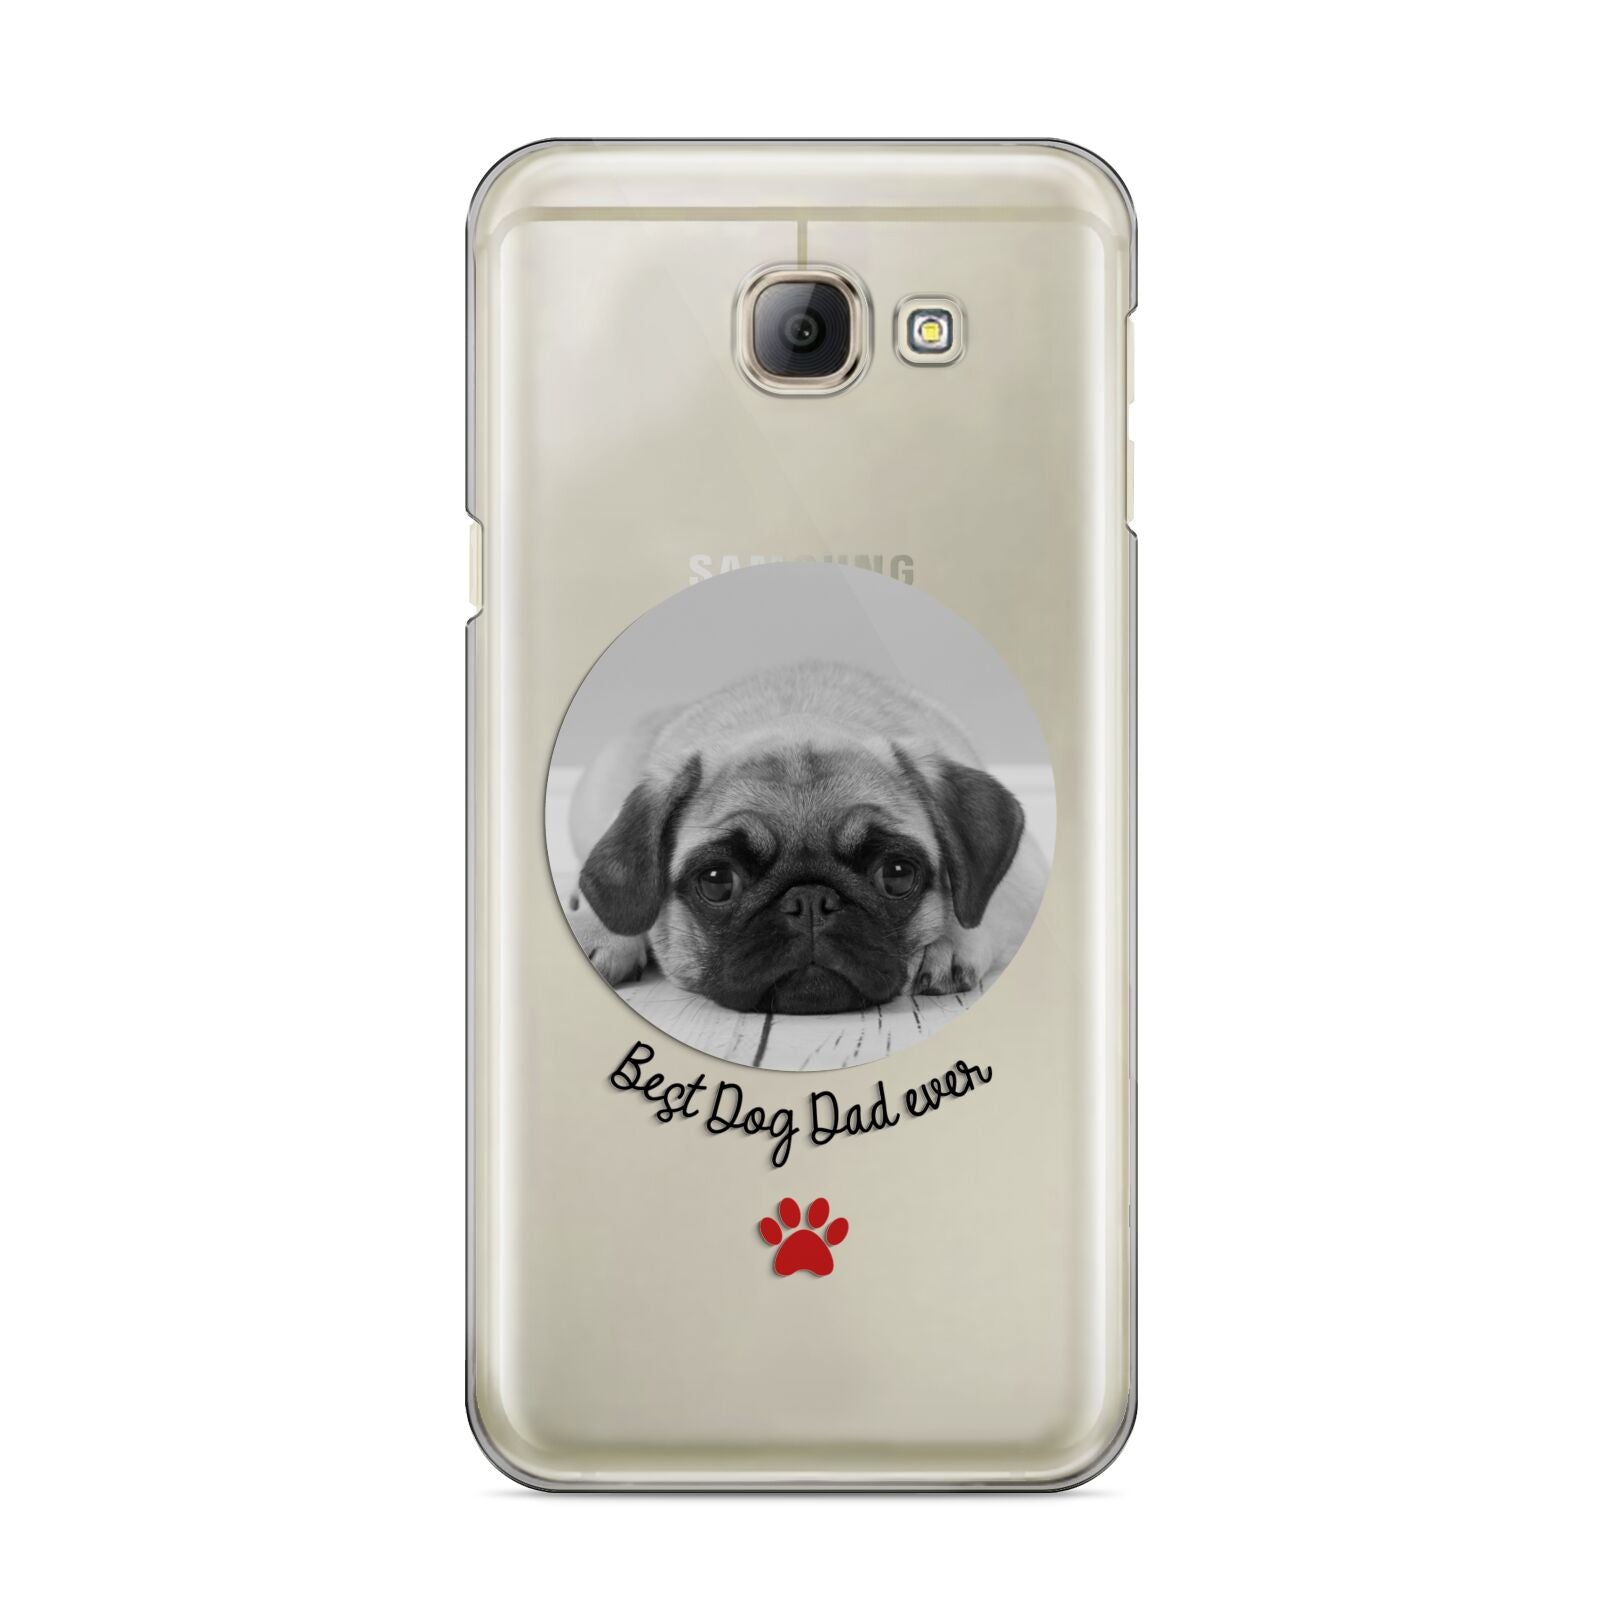 Best Dog Dad Ever Photo Upload Samsung Galaxy A8 2016 Case